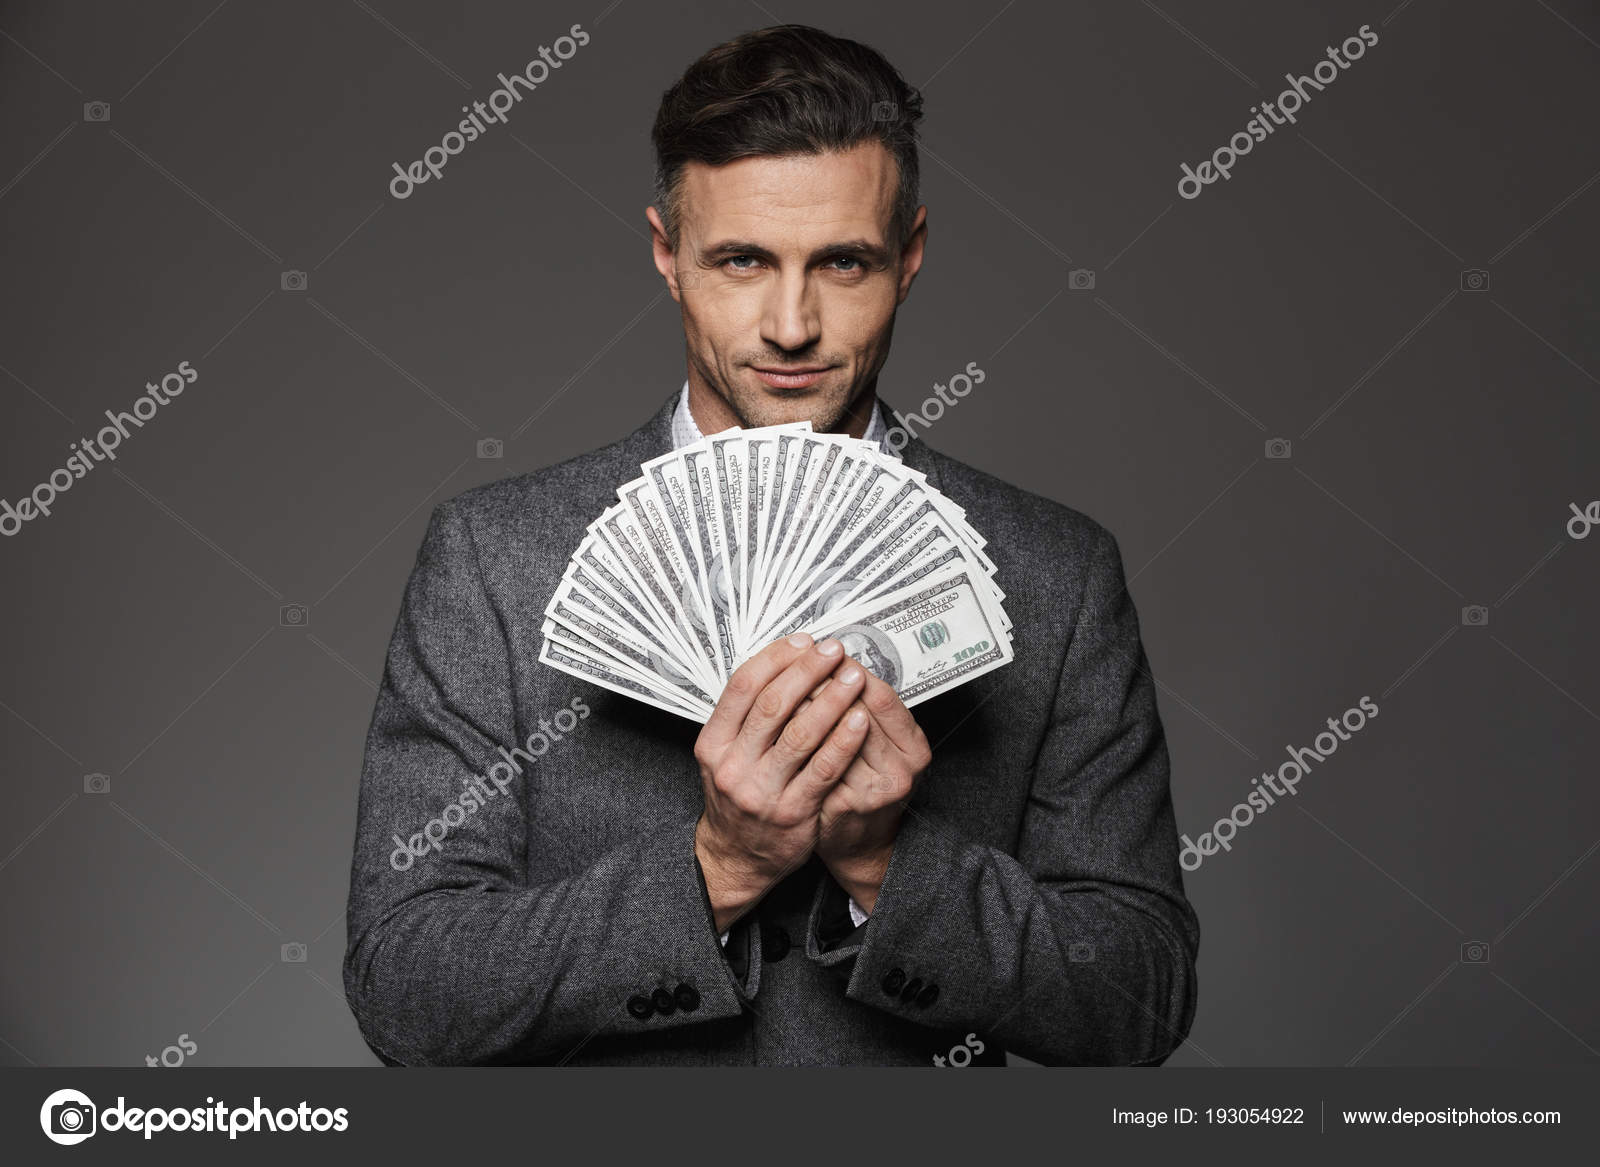 Many man money man. Мужик с деньгами в руках. Идеи для фото с деньгами парень. Держит веер перед собой мужчина. Мужчина в костюме держит деньги.